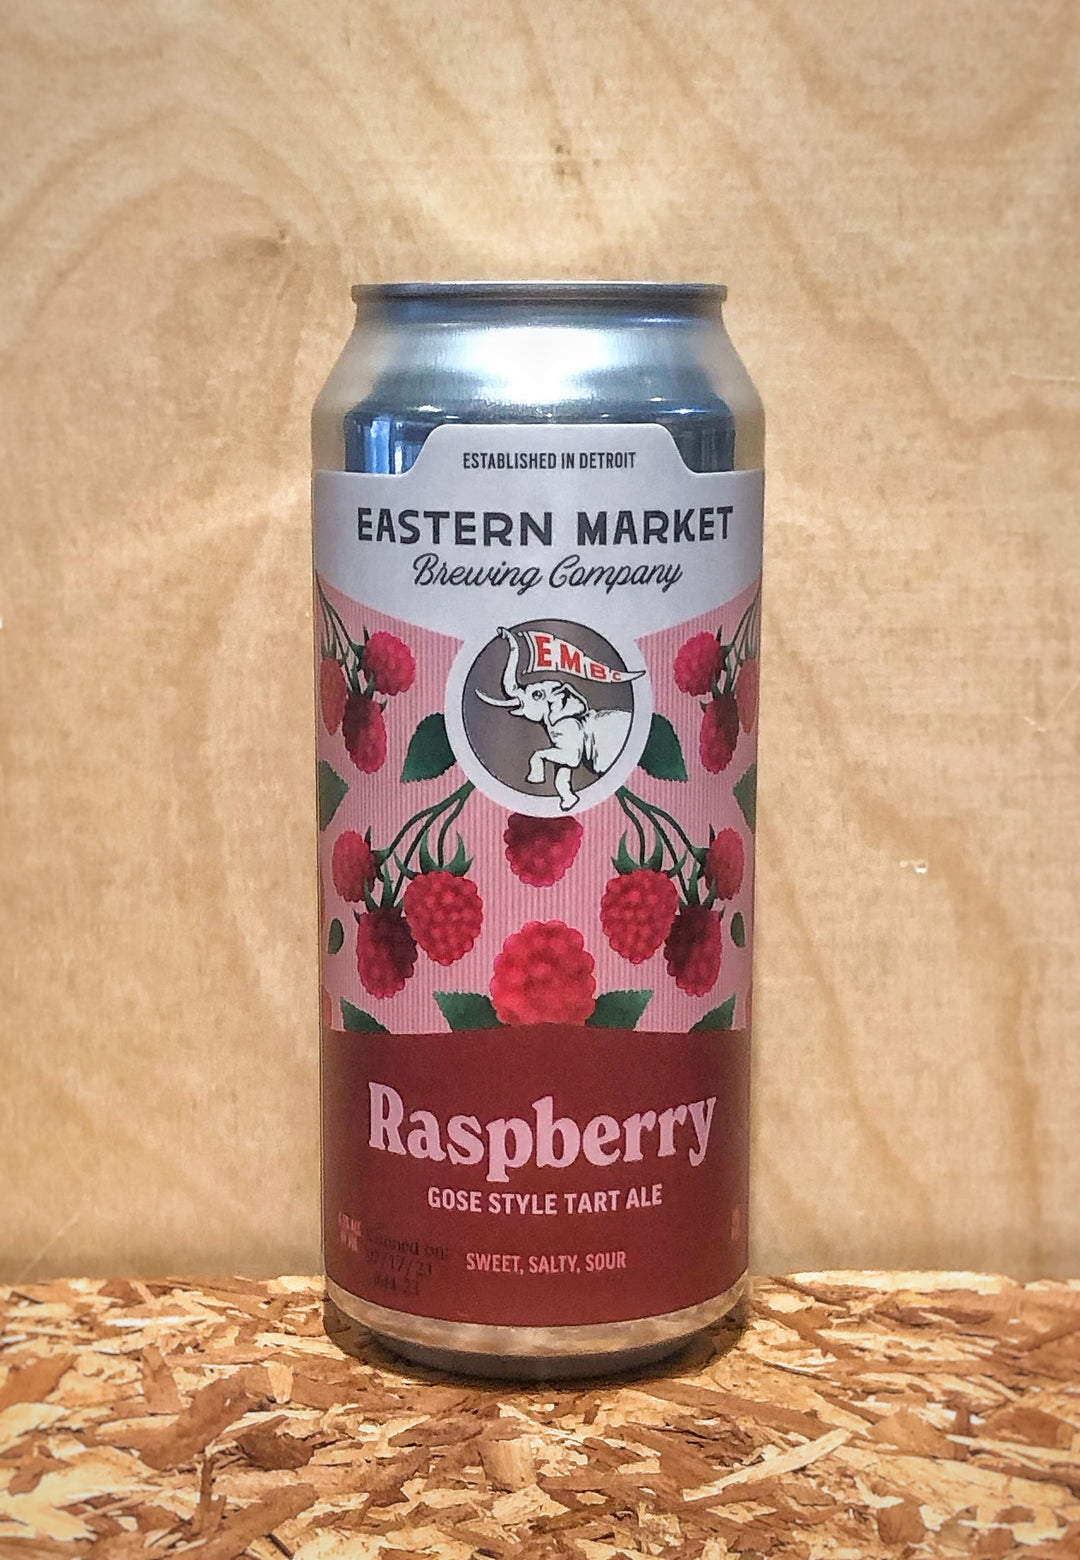 Eastern Market Brewing Co. Raspberry Gose Style Tart Ale (Detroit, MI)